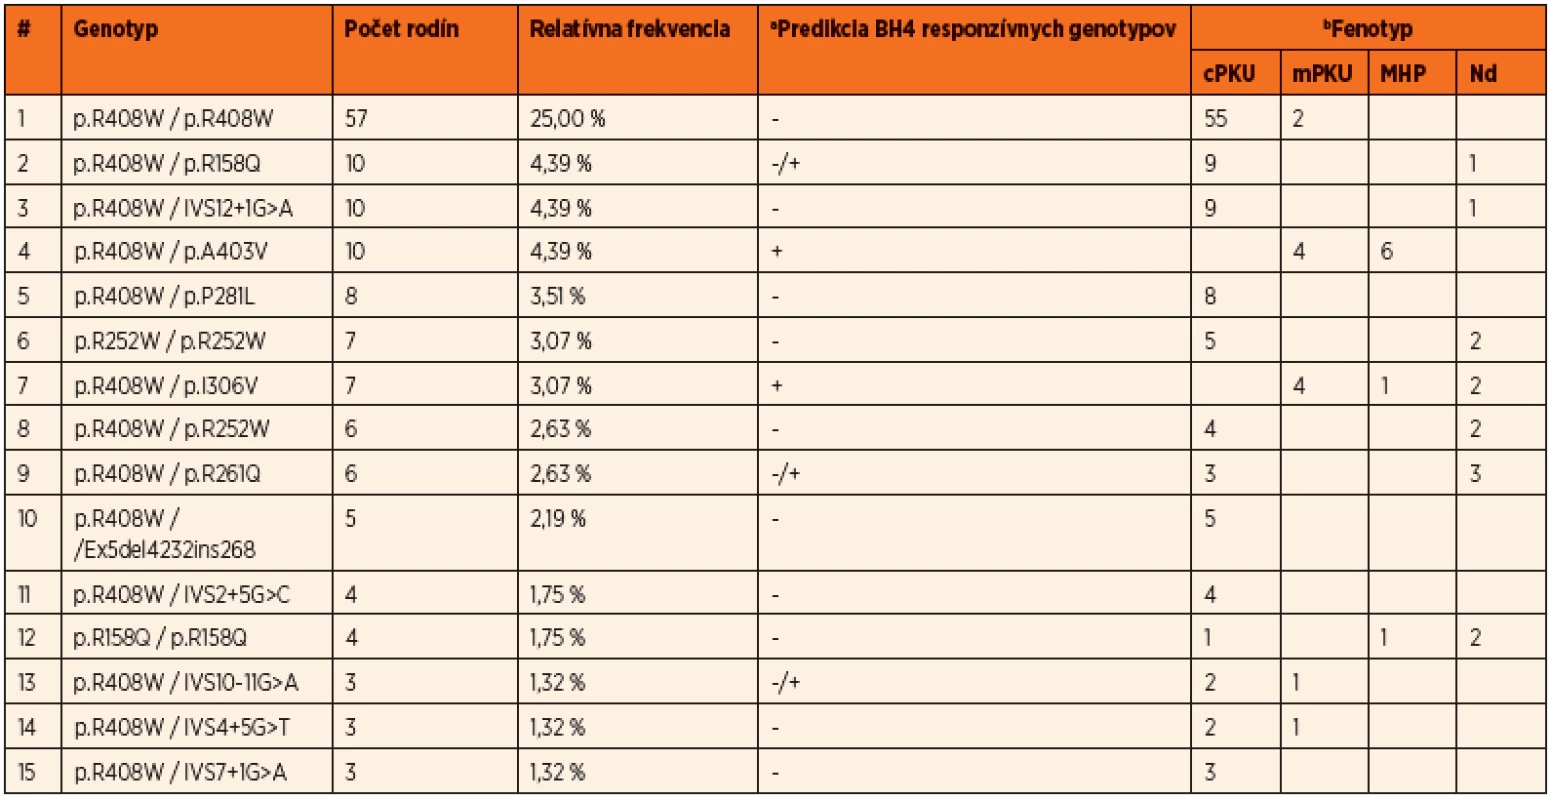 Najfrekventovanejšie genotypy identifikované v slovenskej populácii, ich zastúpenie, frekvencie, korelácie s fenotypovými kategóriami PKU a predikcia BH4 responzivity.